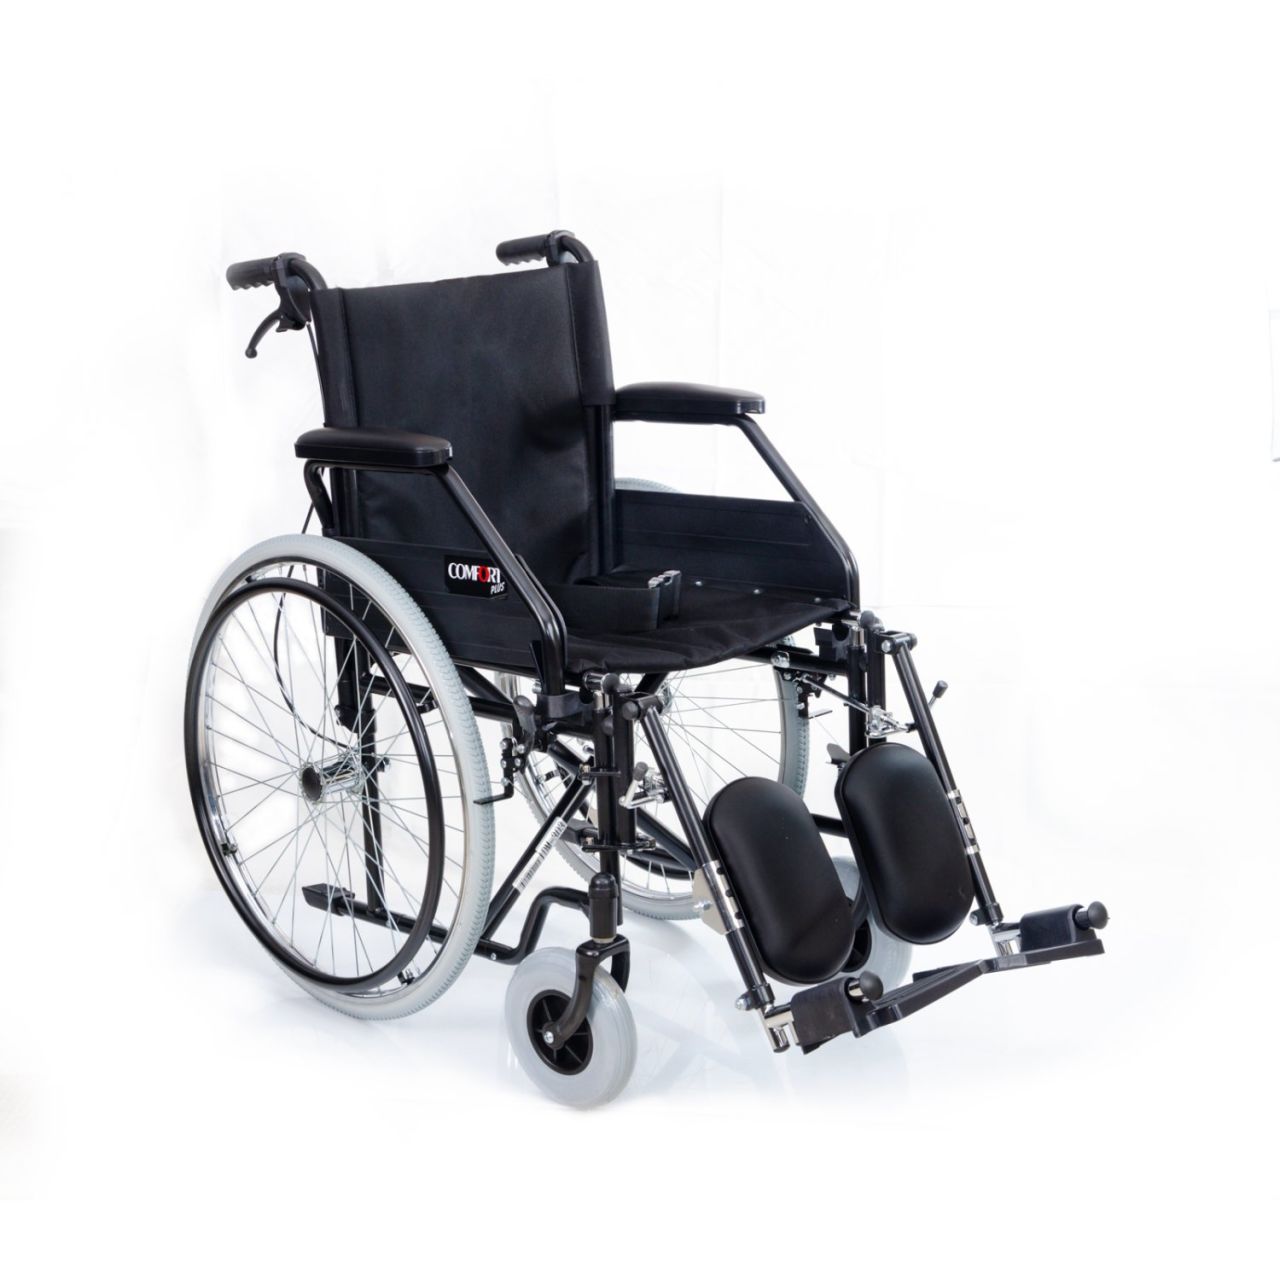 Comfort Plus DM-303: Yaşamınızı Kolaylaştıran Ergonomik Sandalye